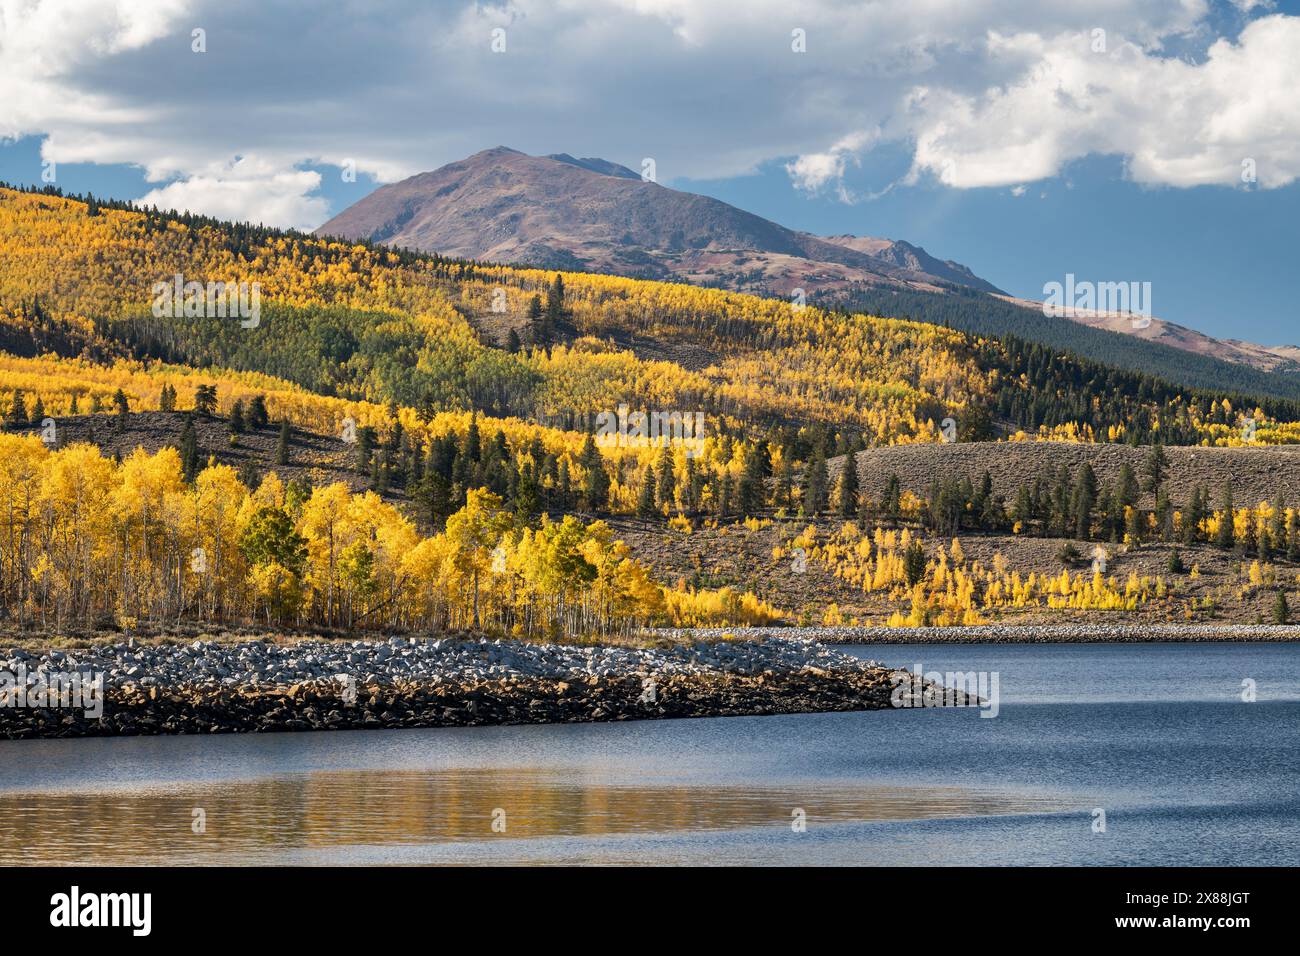 Mount Massive di 14.428 metri sullo sfondo di un'abbondanza di pioppi dorati. Il lago artificiale di Mount Elbert Forebay si trova sopra i Twin Lakes Colorado. Foto Stock